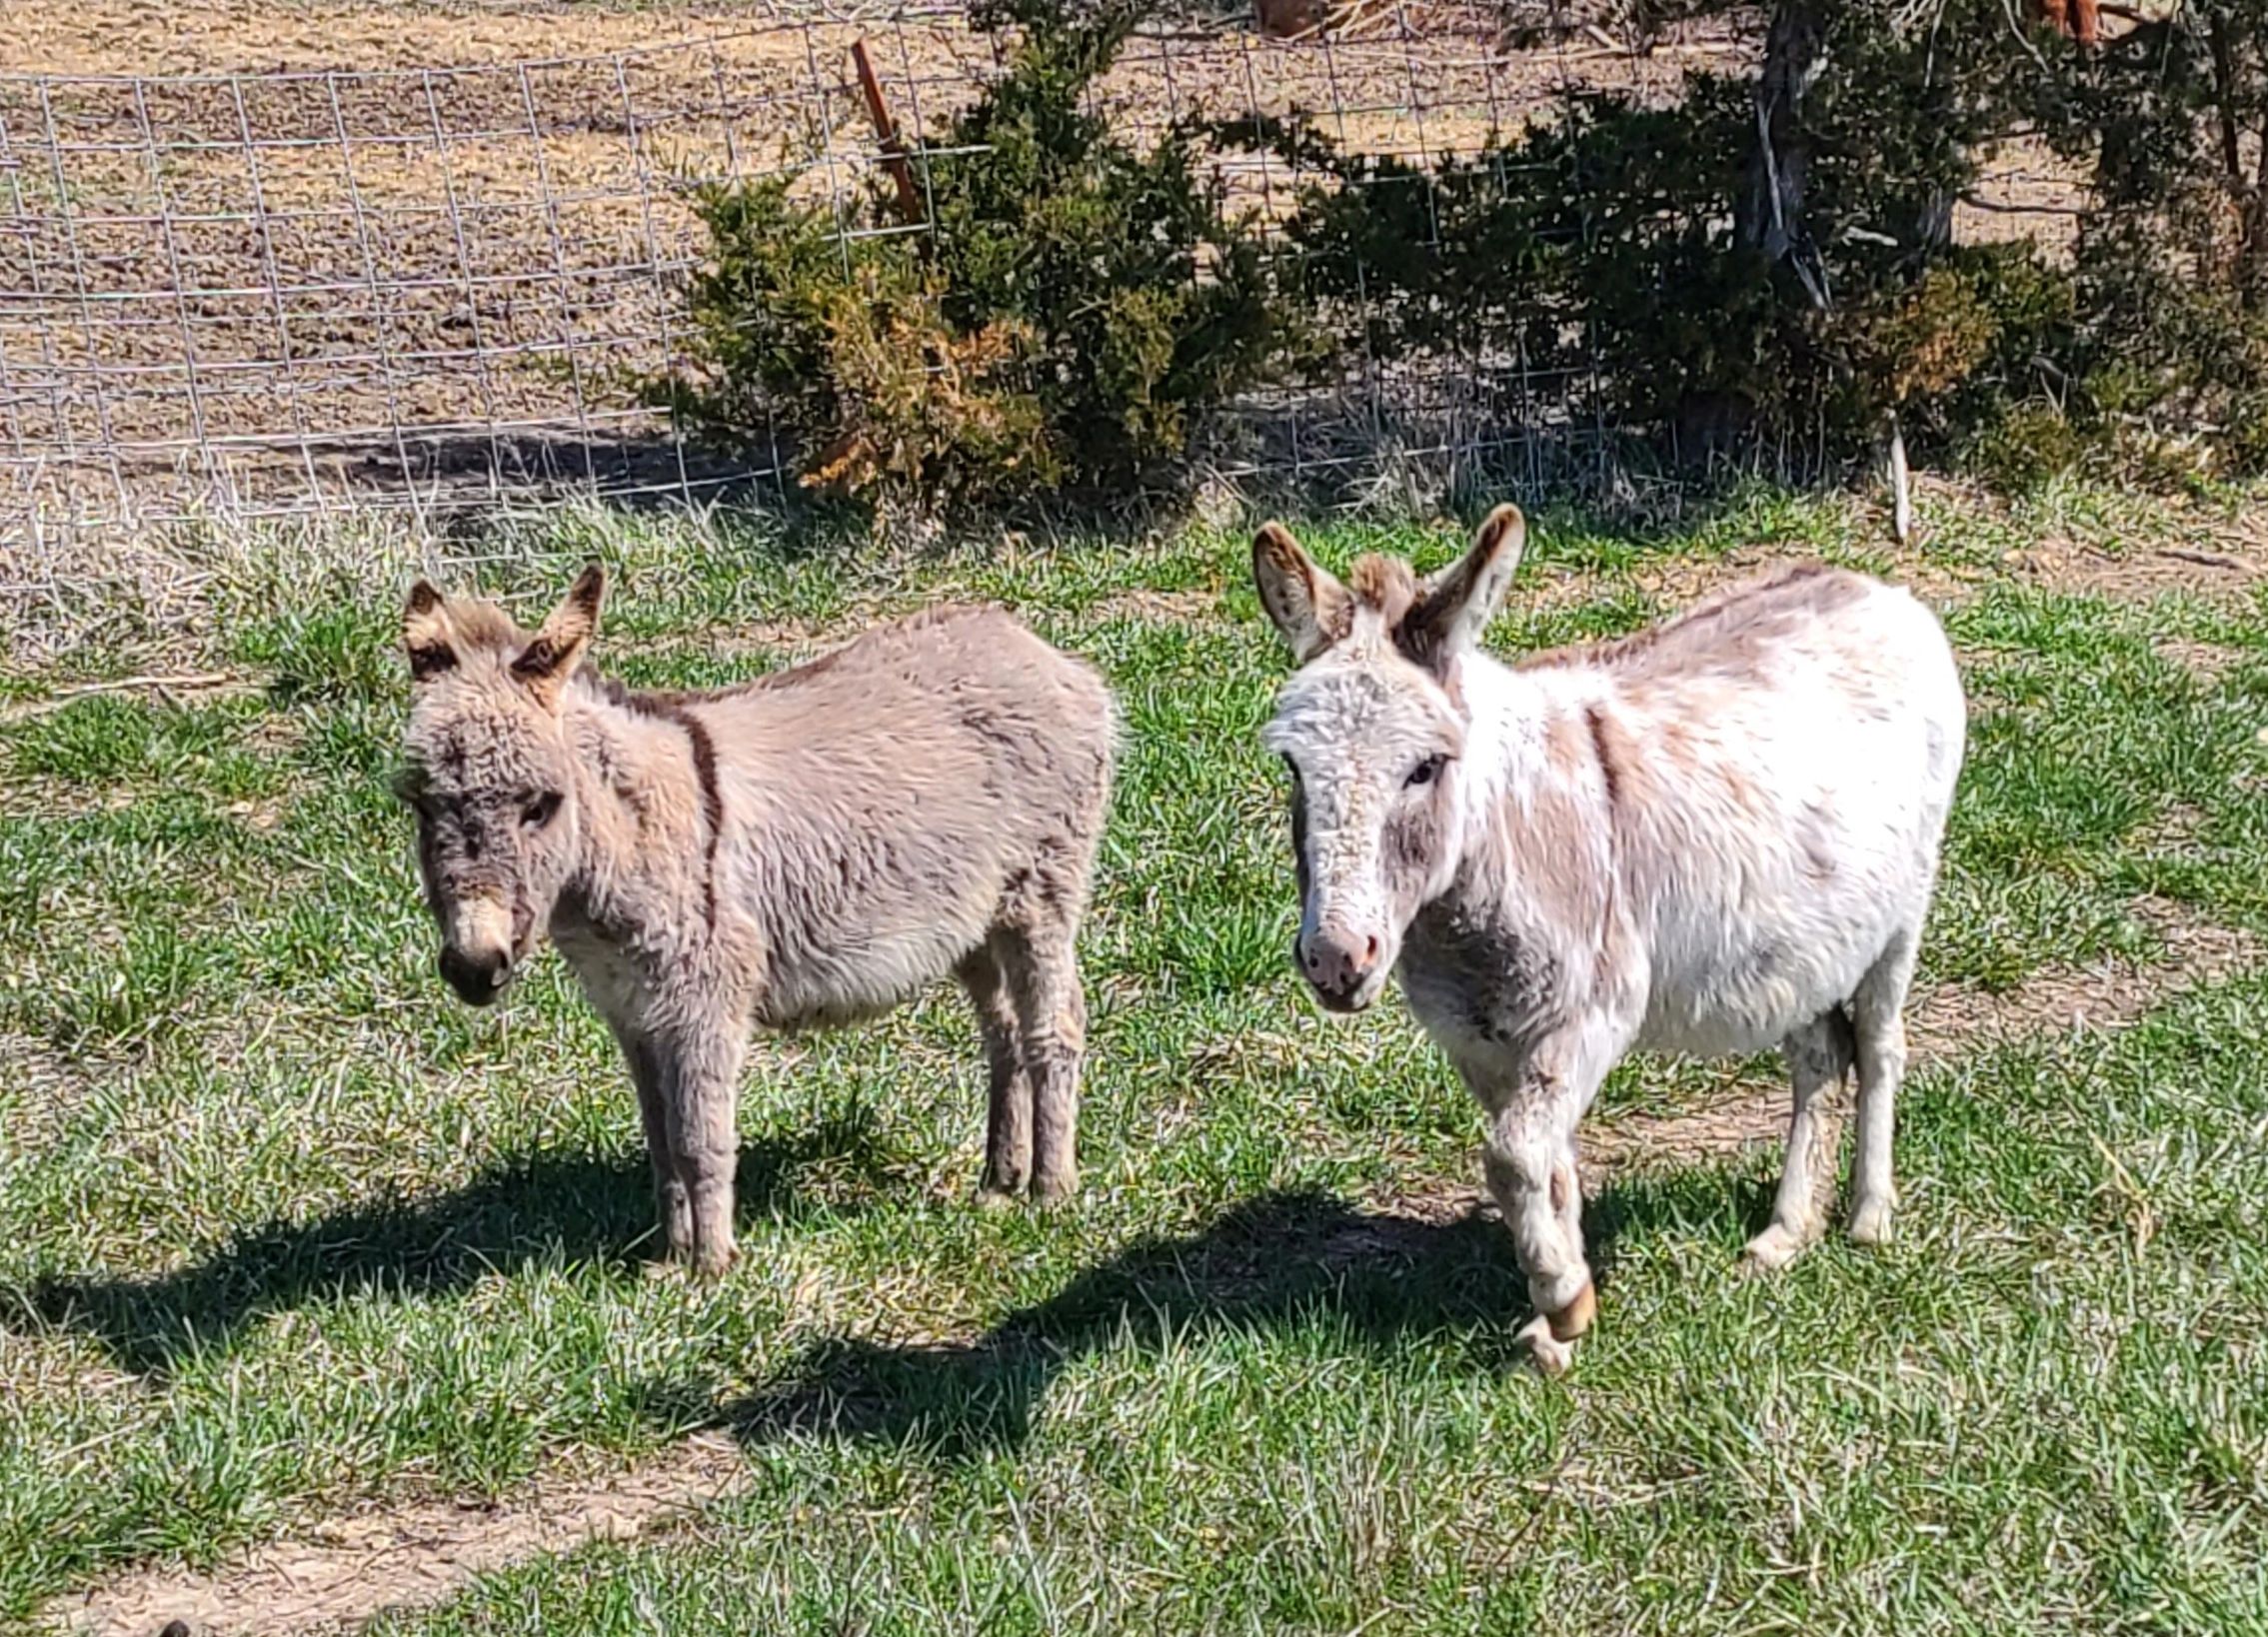 2 donkeys